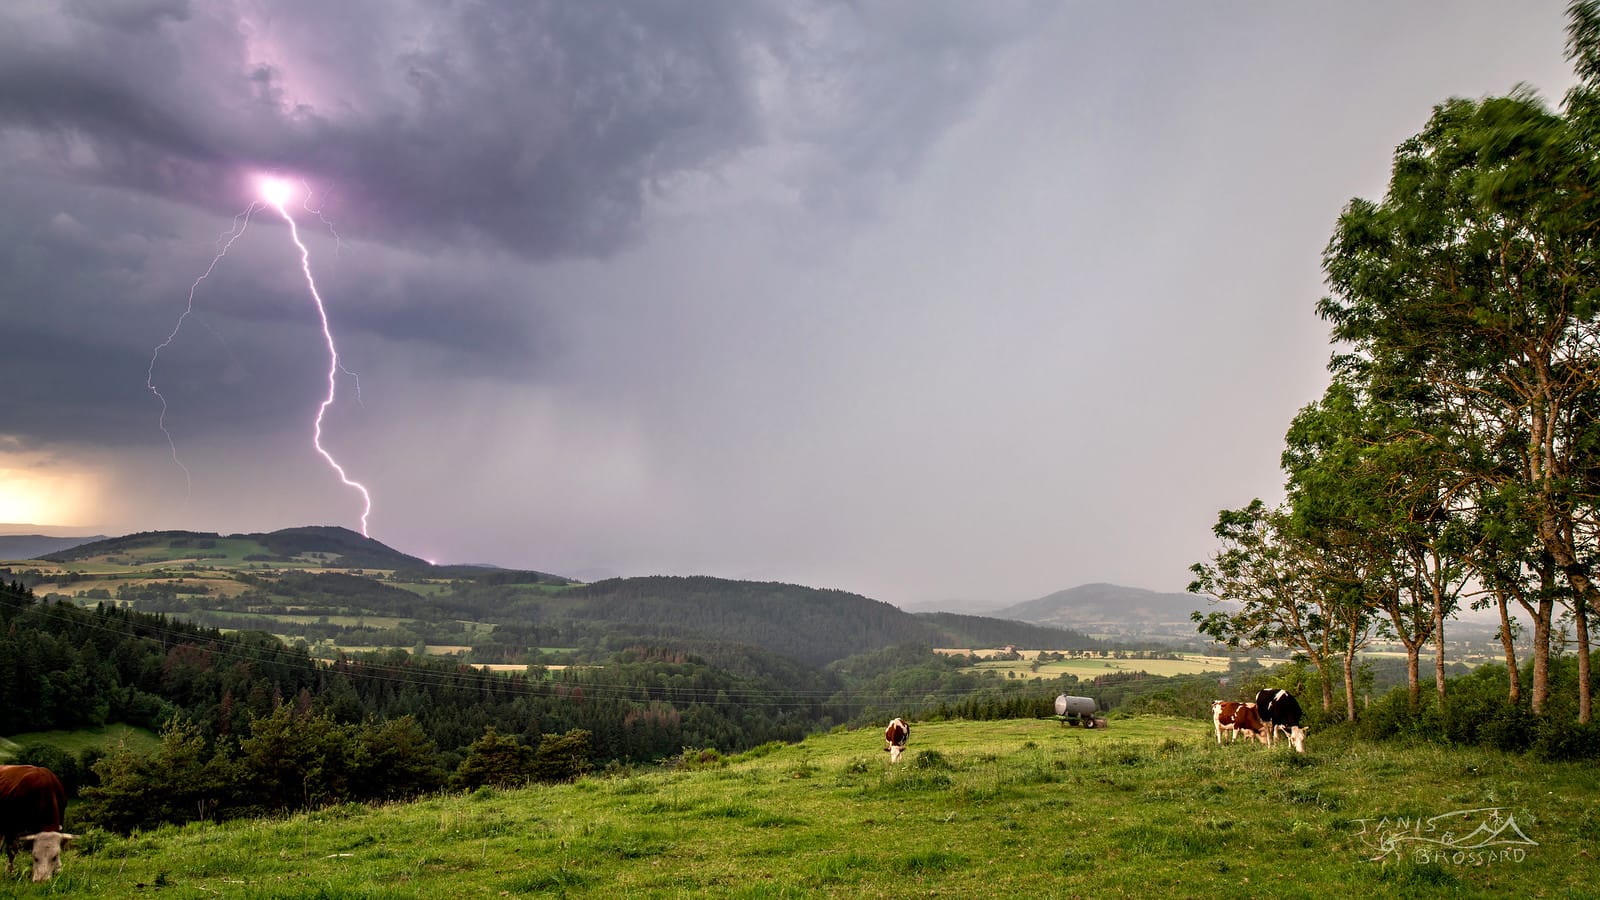 L'orage se situait non loin de Brioude dans la haute Loire, ambiance électrique à la hauteur de ce que j'espérais, en premier plan les vaches ignorent complètement le danger qui arrive peu à peu sur elles - 30/06/2019 17:27 - Janis brossard